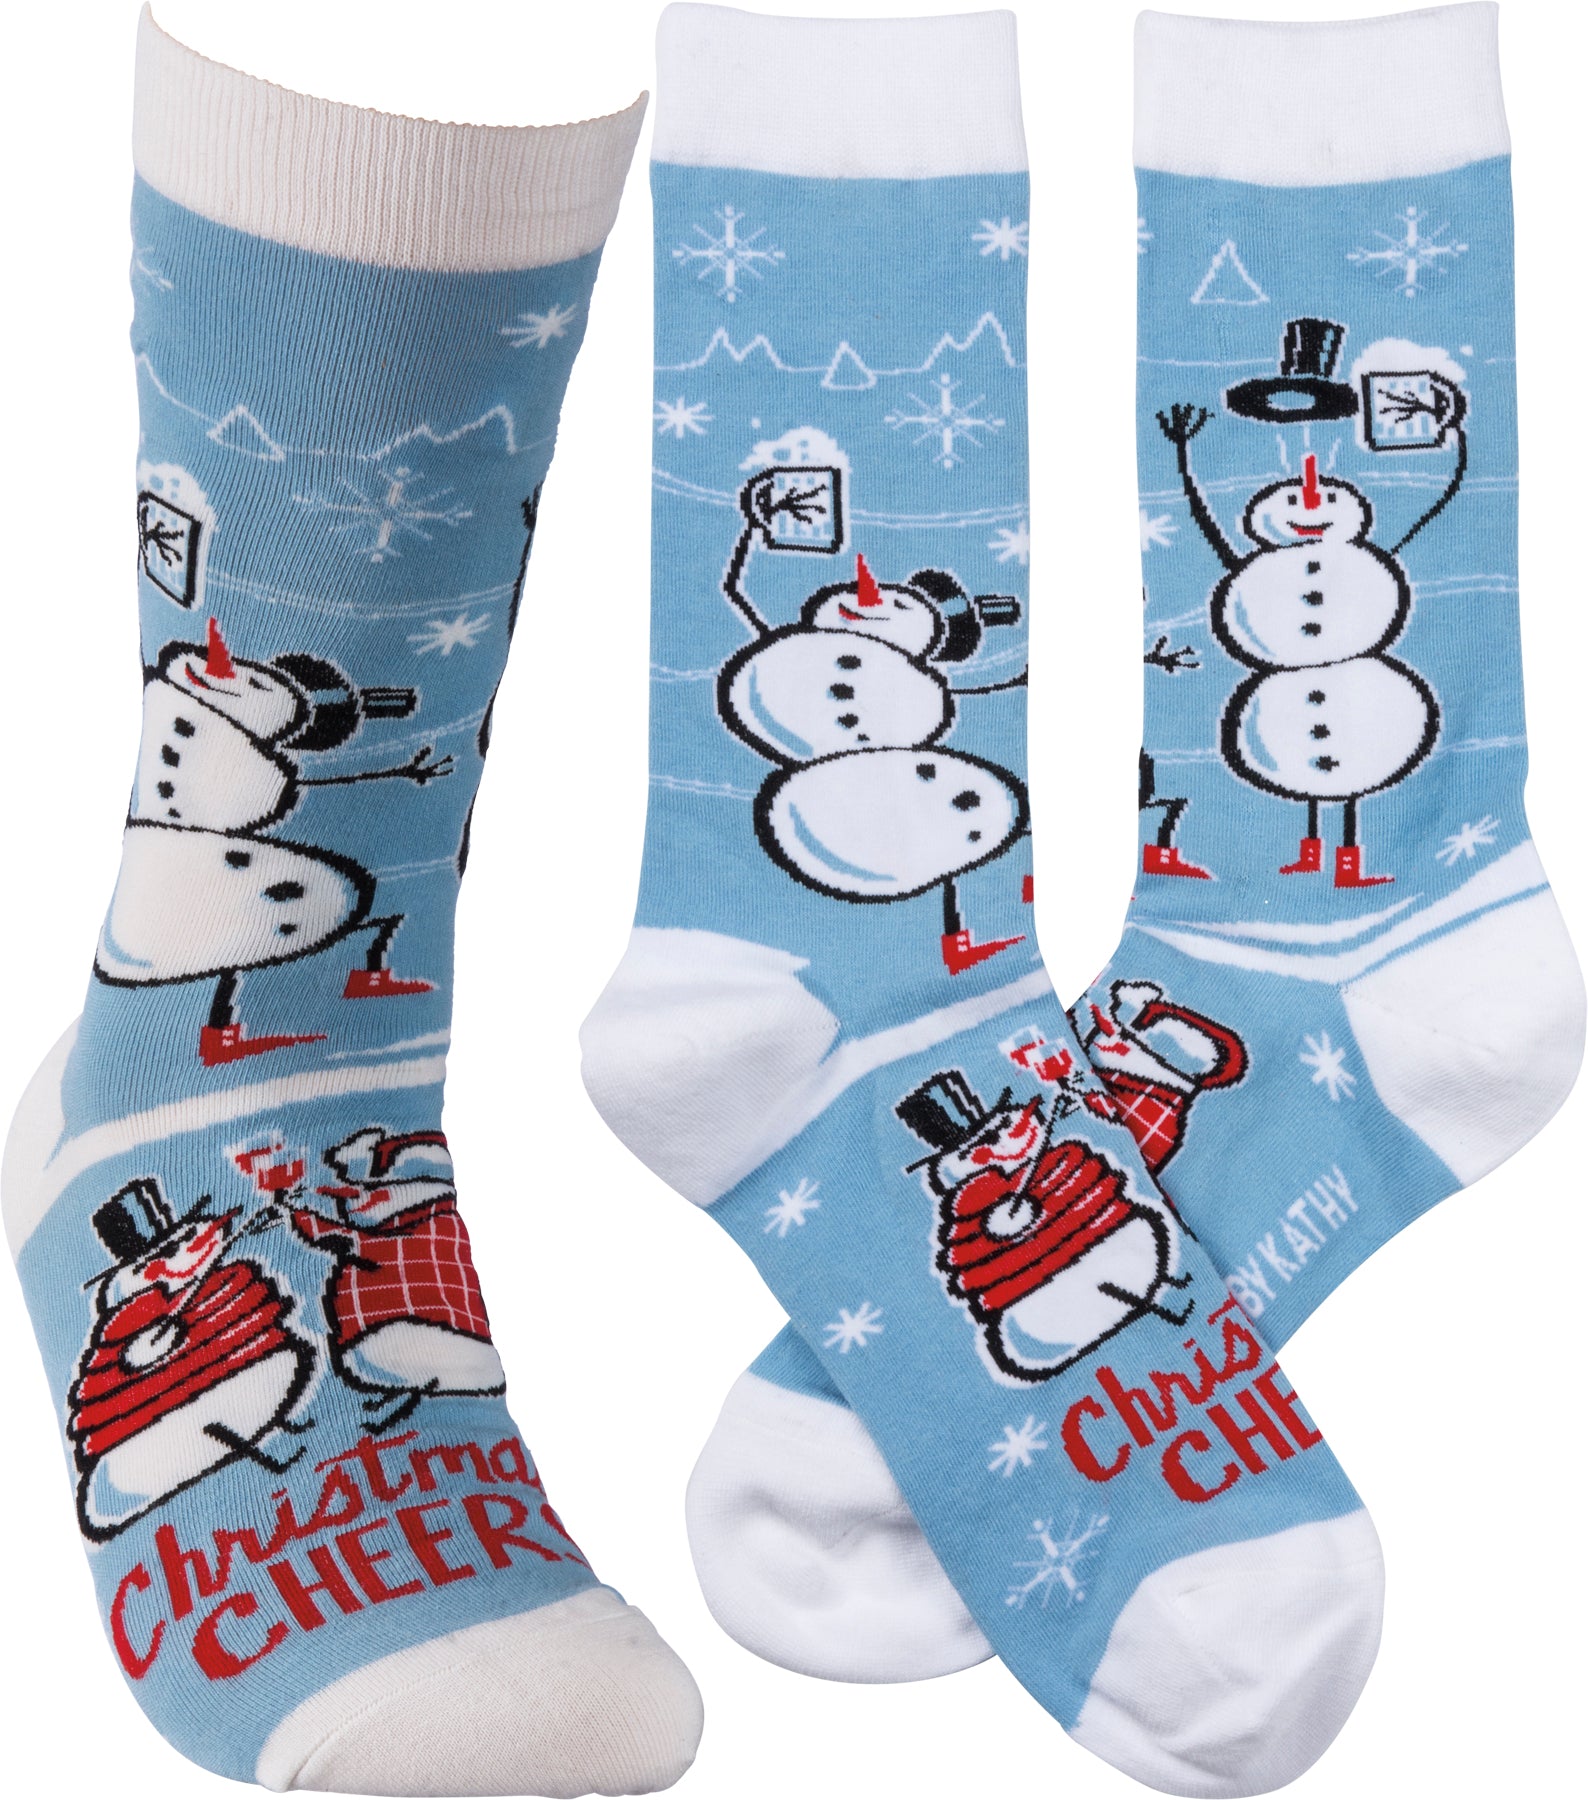 Sale Christmas Cheer Socks